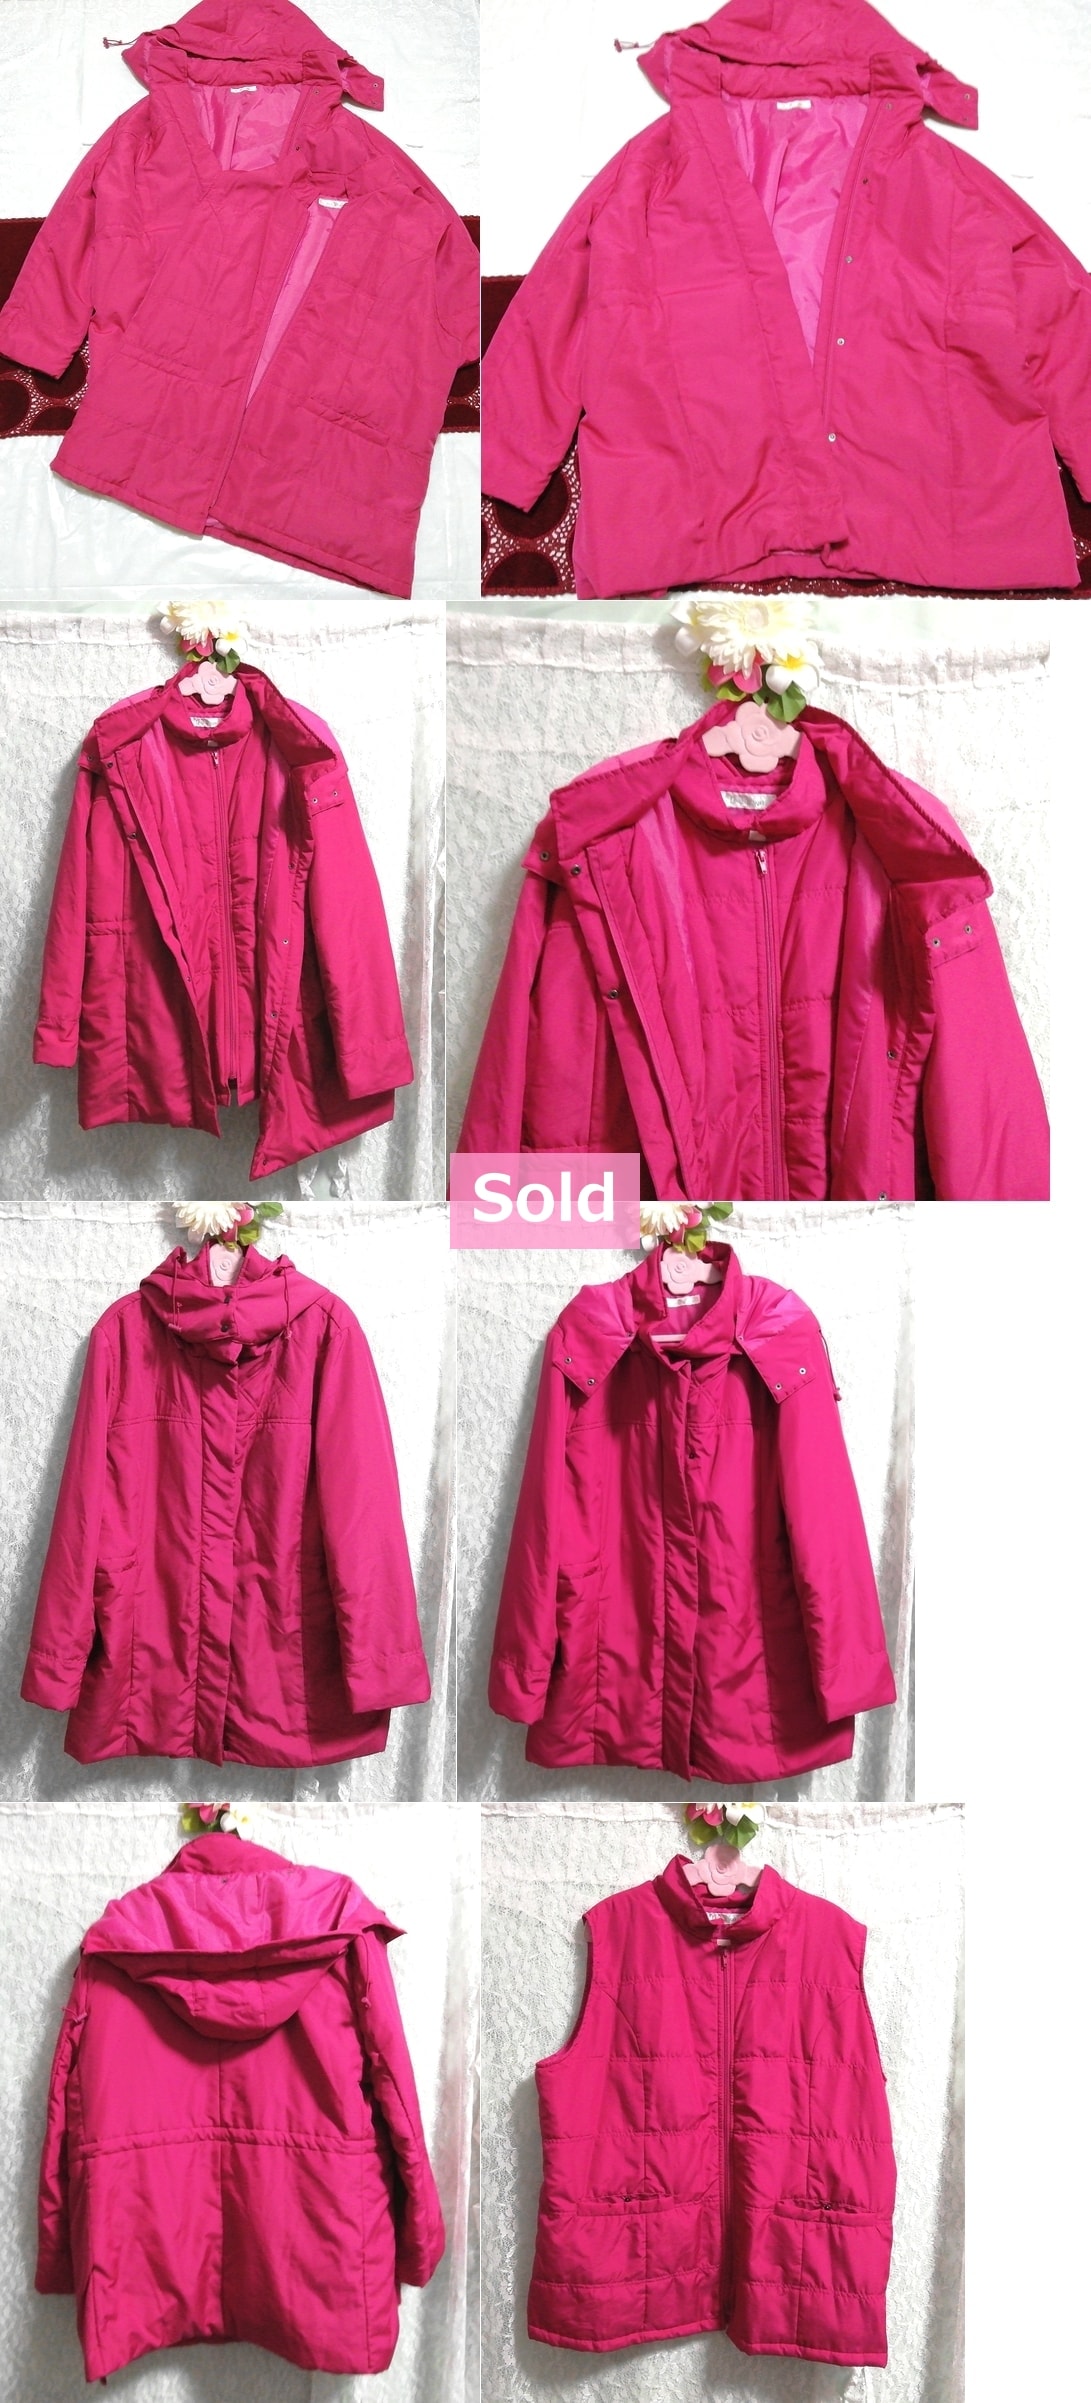 洋红色粉红色背心和羽绒大衣2套，大衣和大衣常规及XL尺寸或更大